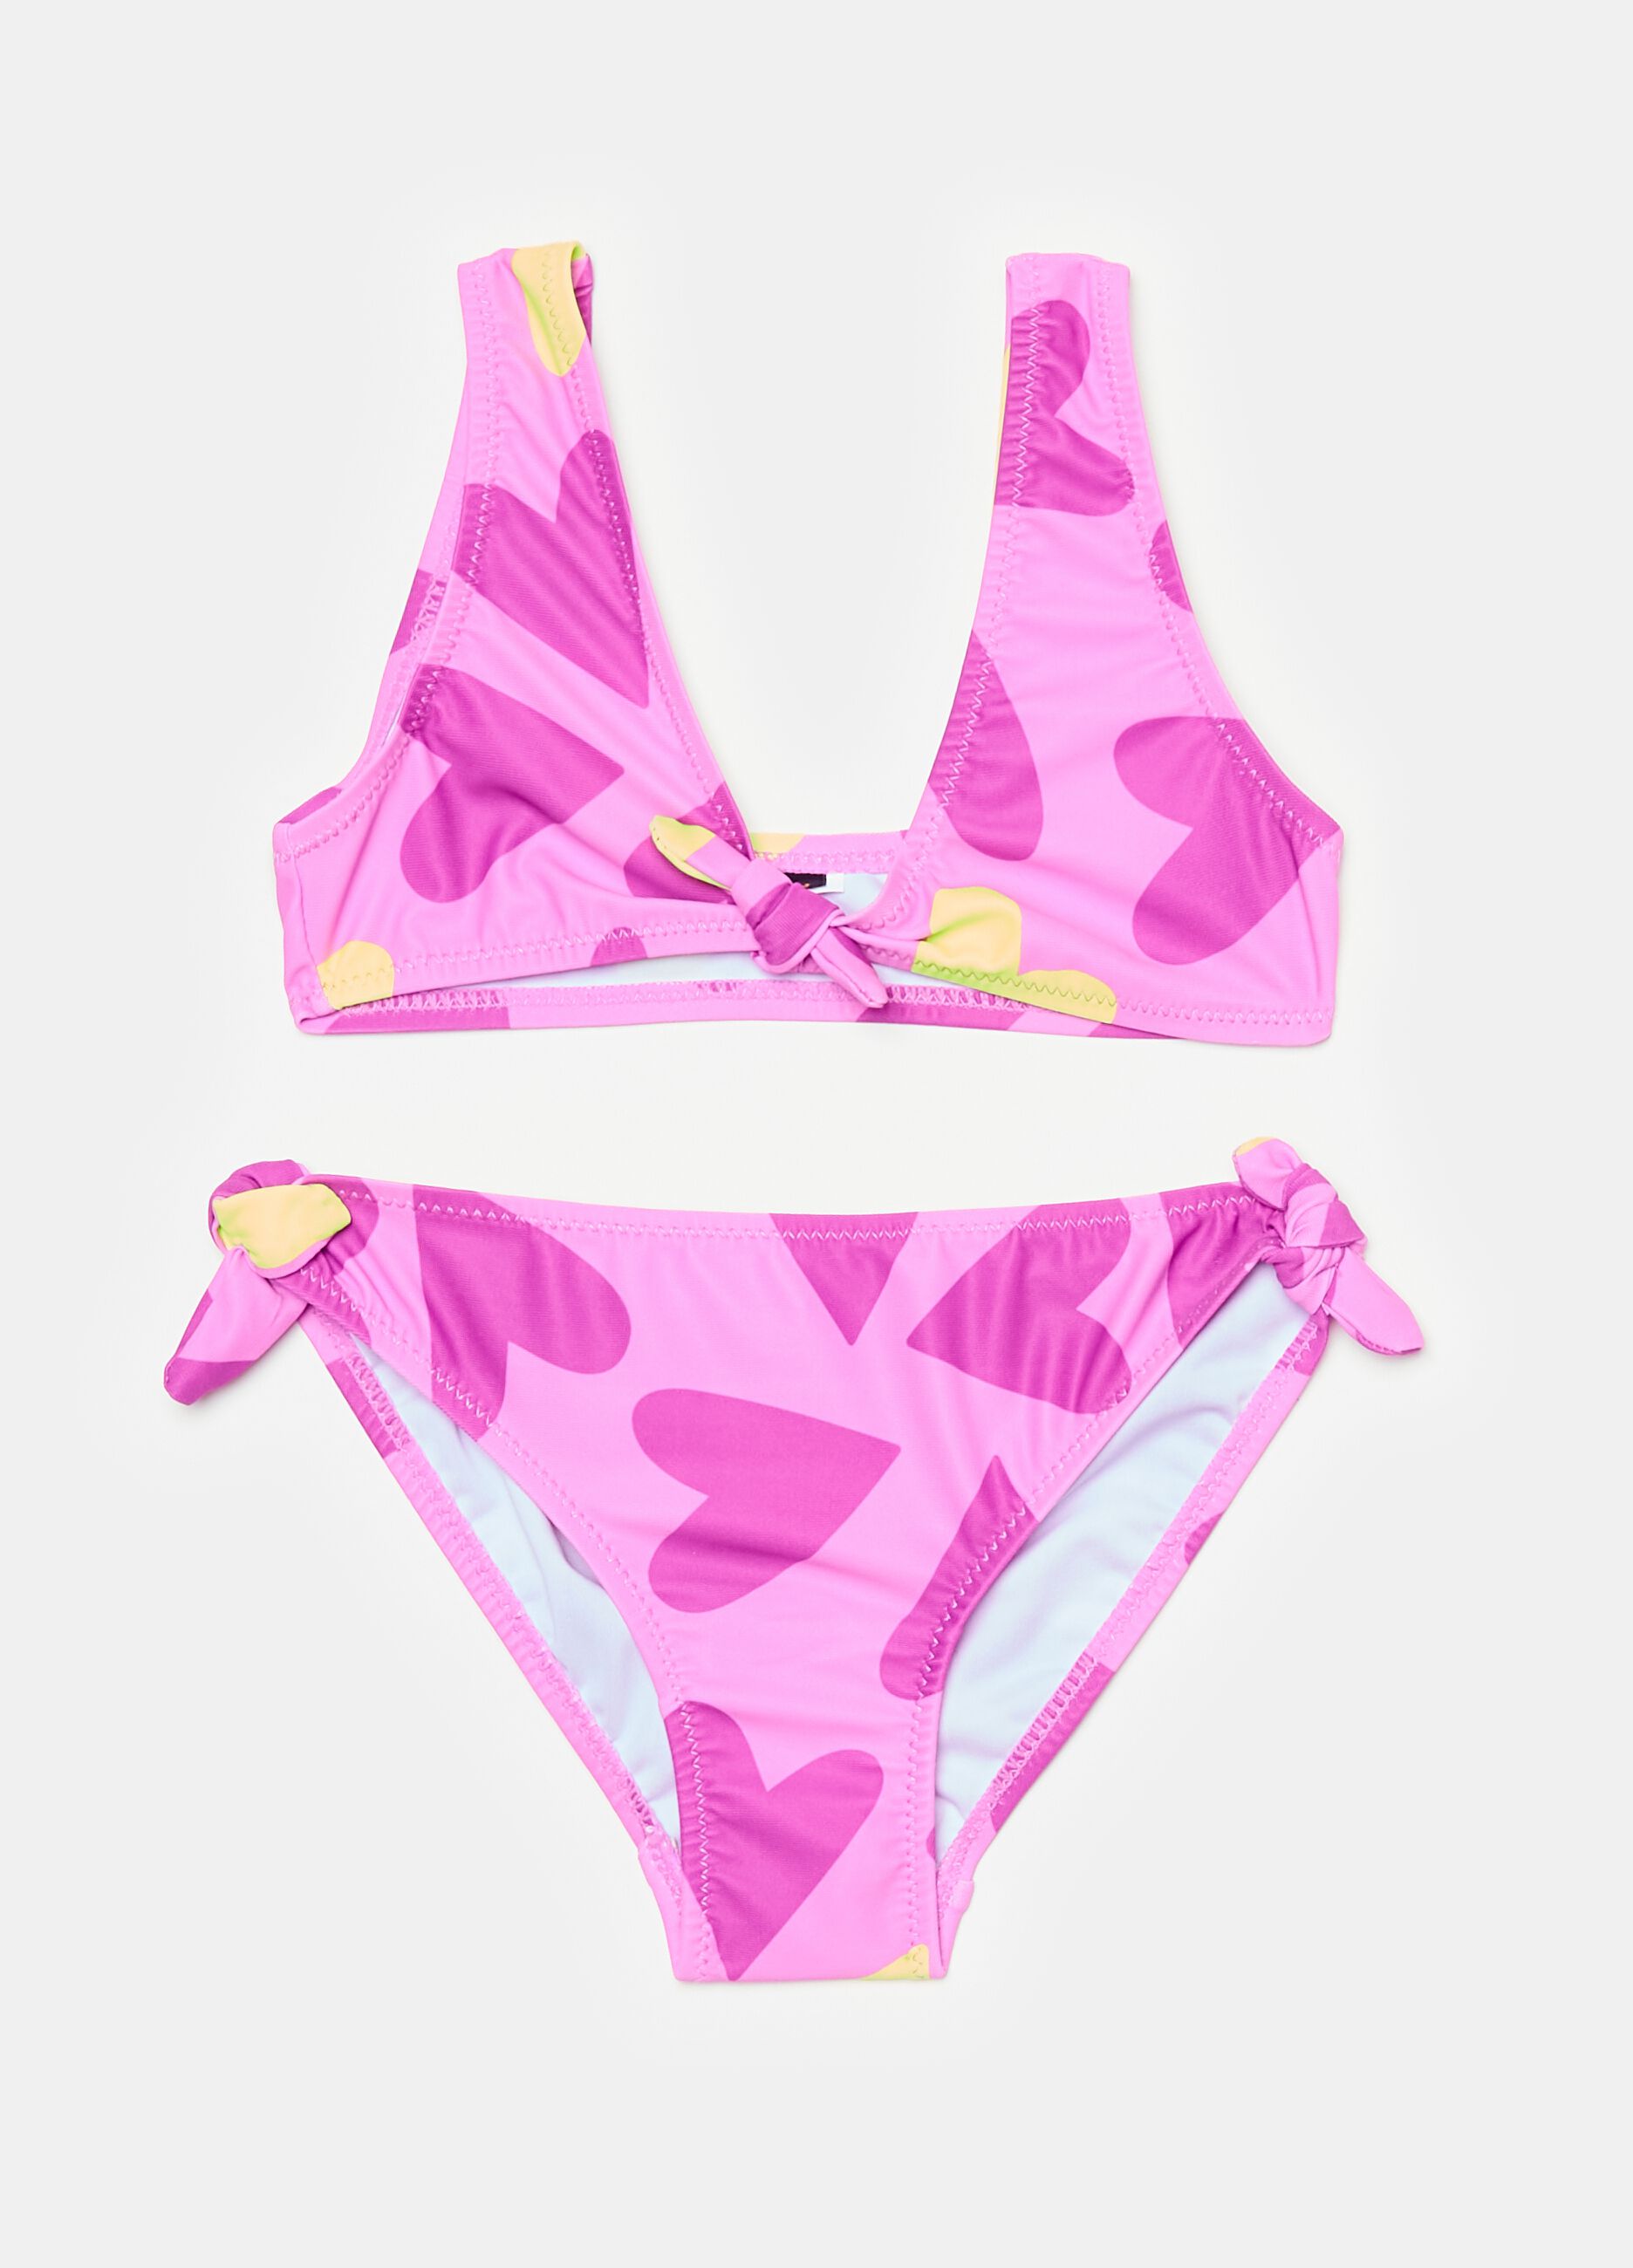 Bikini with hearts print